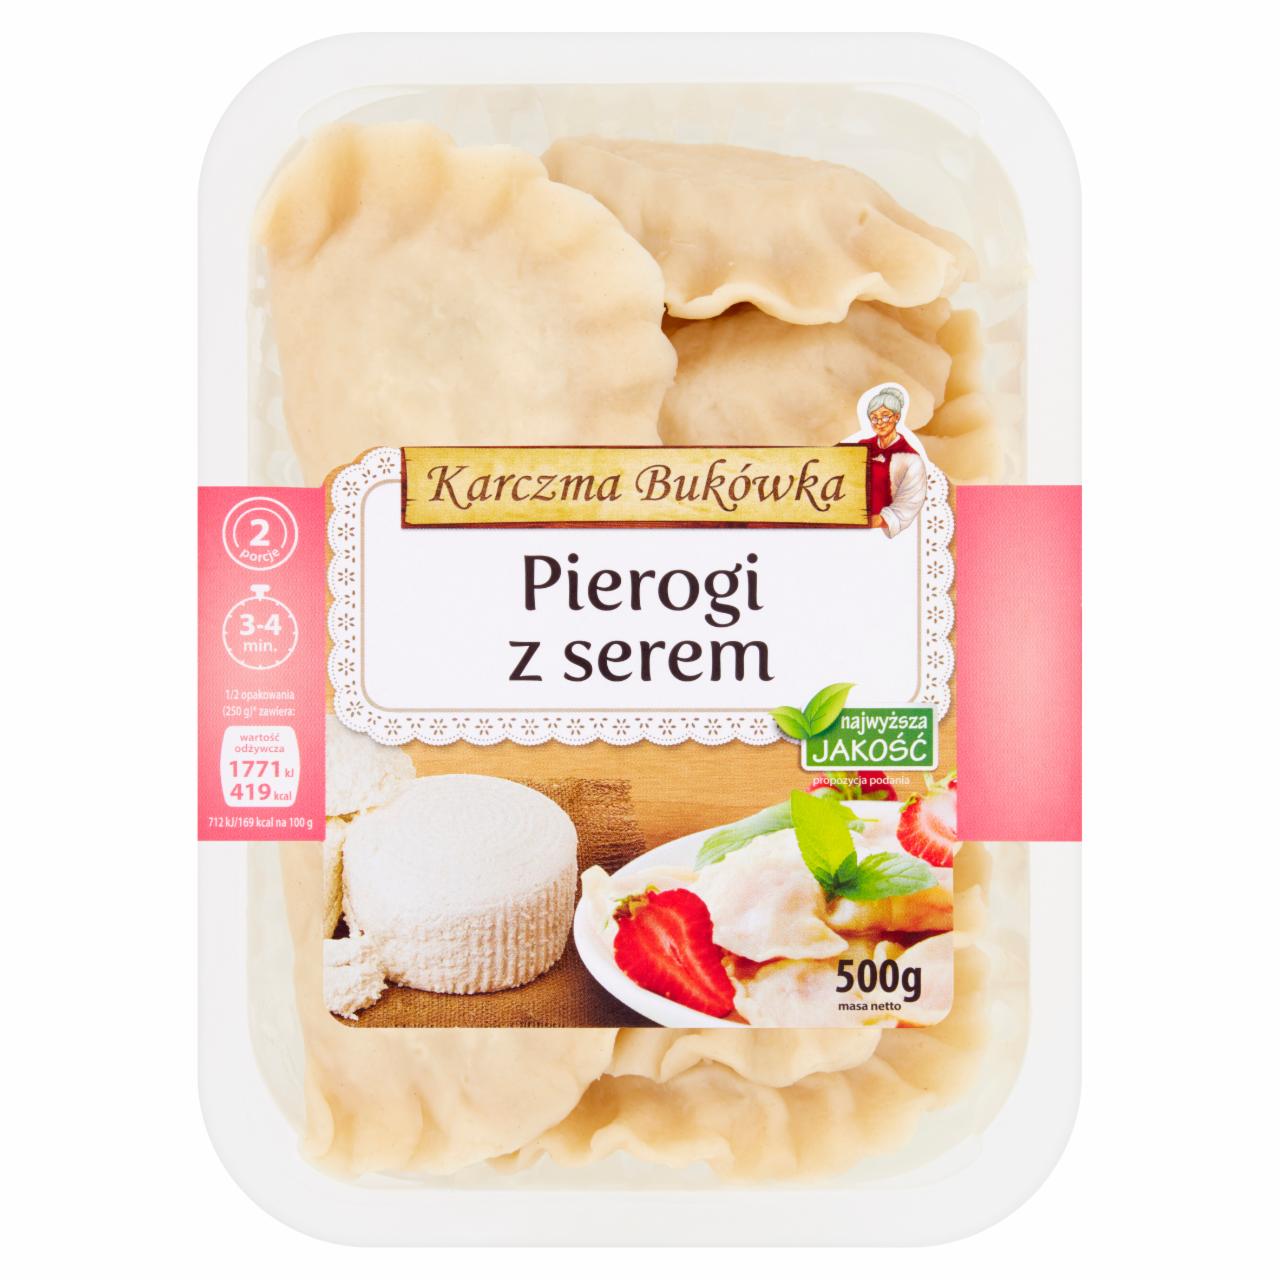 Zdjęcia - Karczma Bukówka Pierogi z serem 500 g